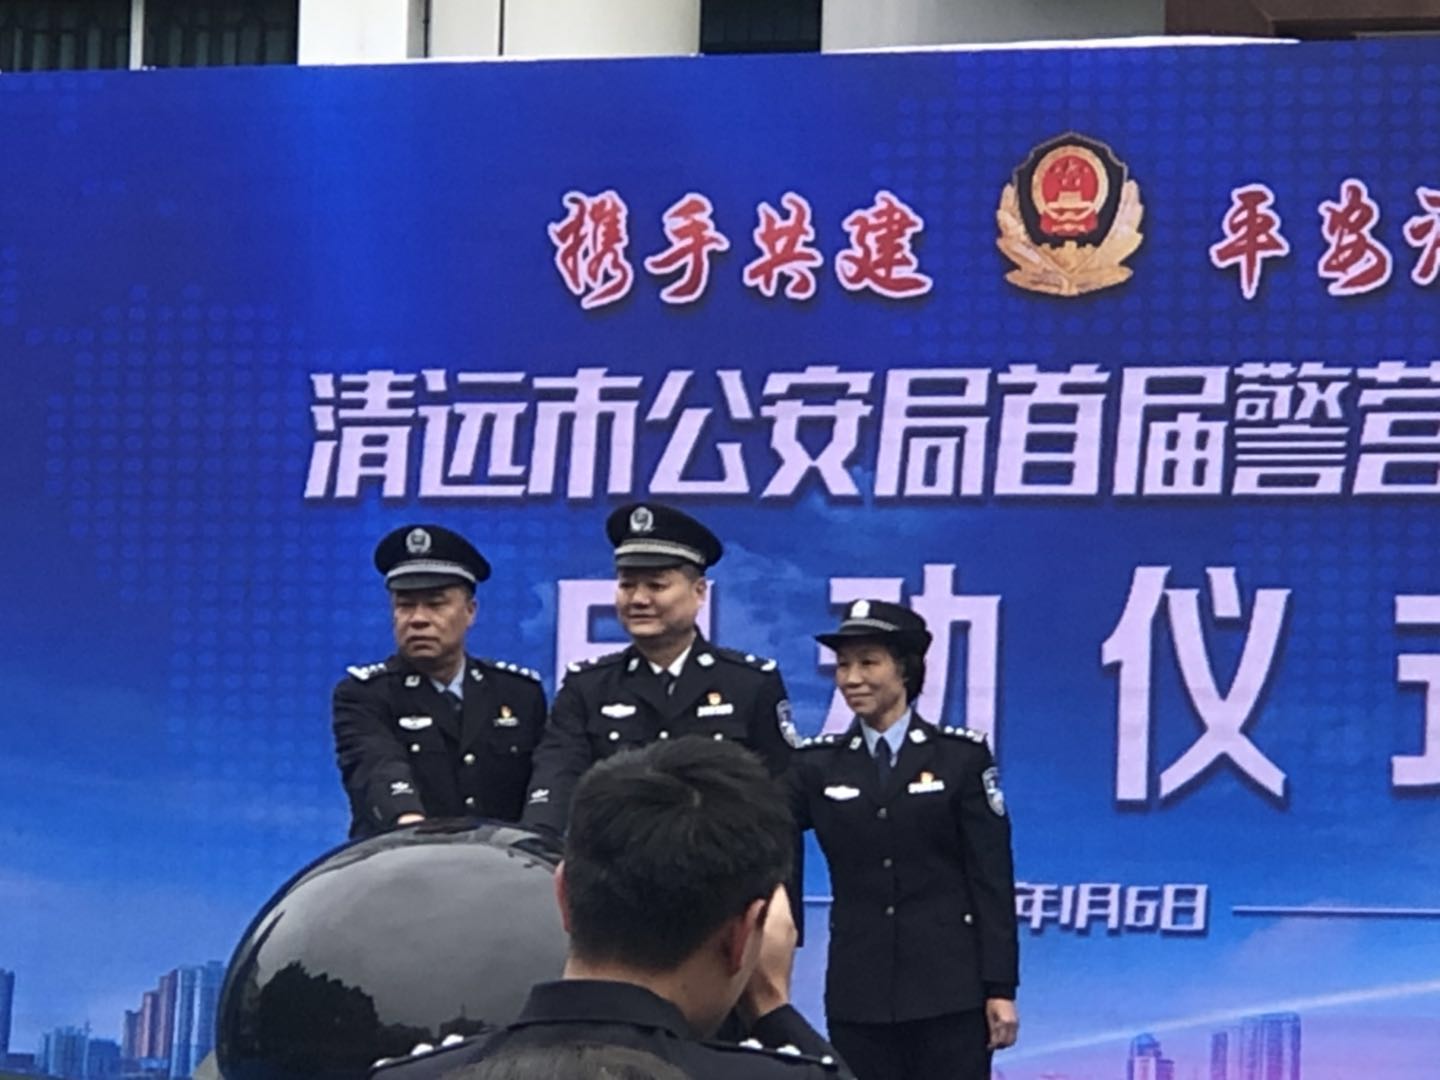 清远市公安局成功举办首届"警营开放日"活动